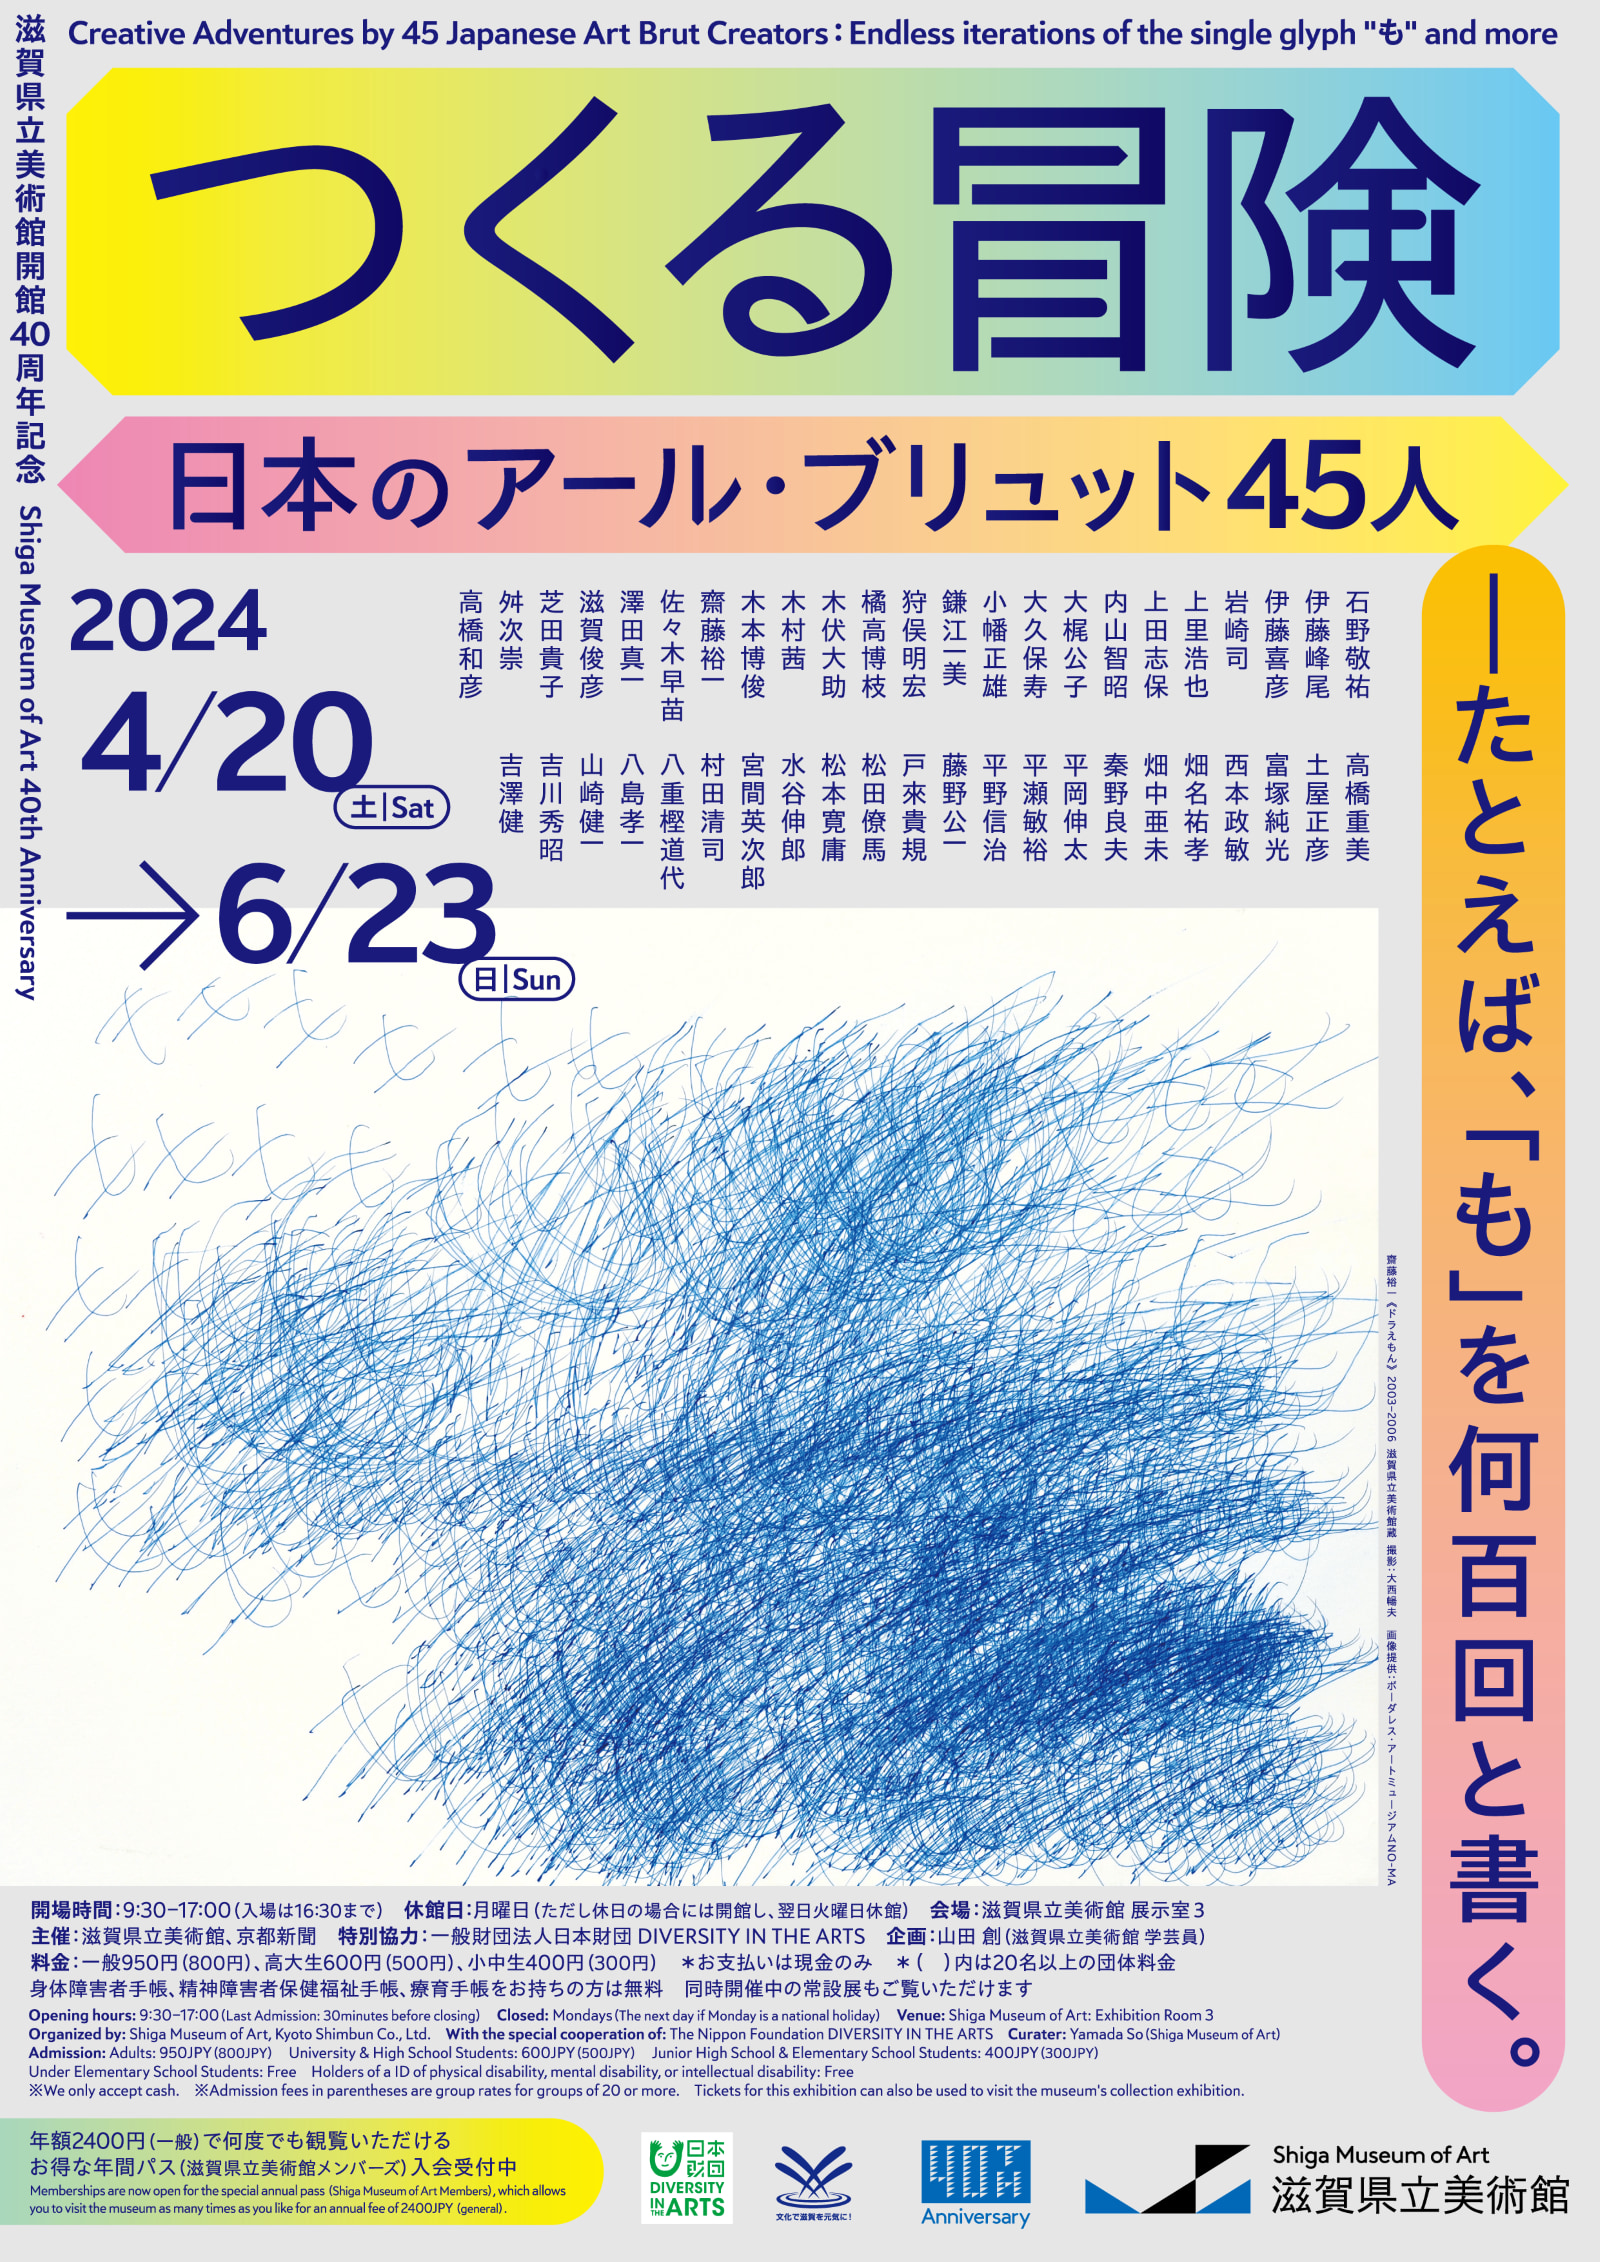 展覧会チラシの表画像。上段に出展作家の名前の一覧。下に青いペンで「も」の文字がたくさん描かれた齋藤裕一さんの作品